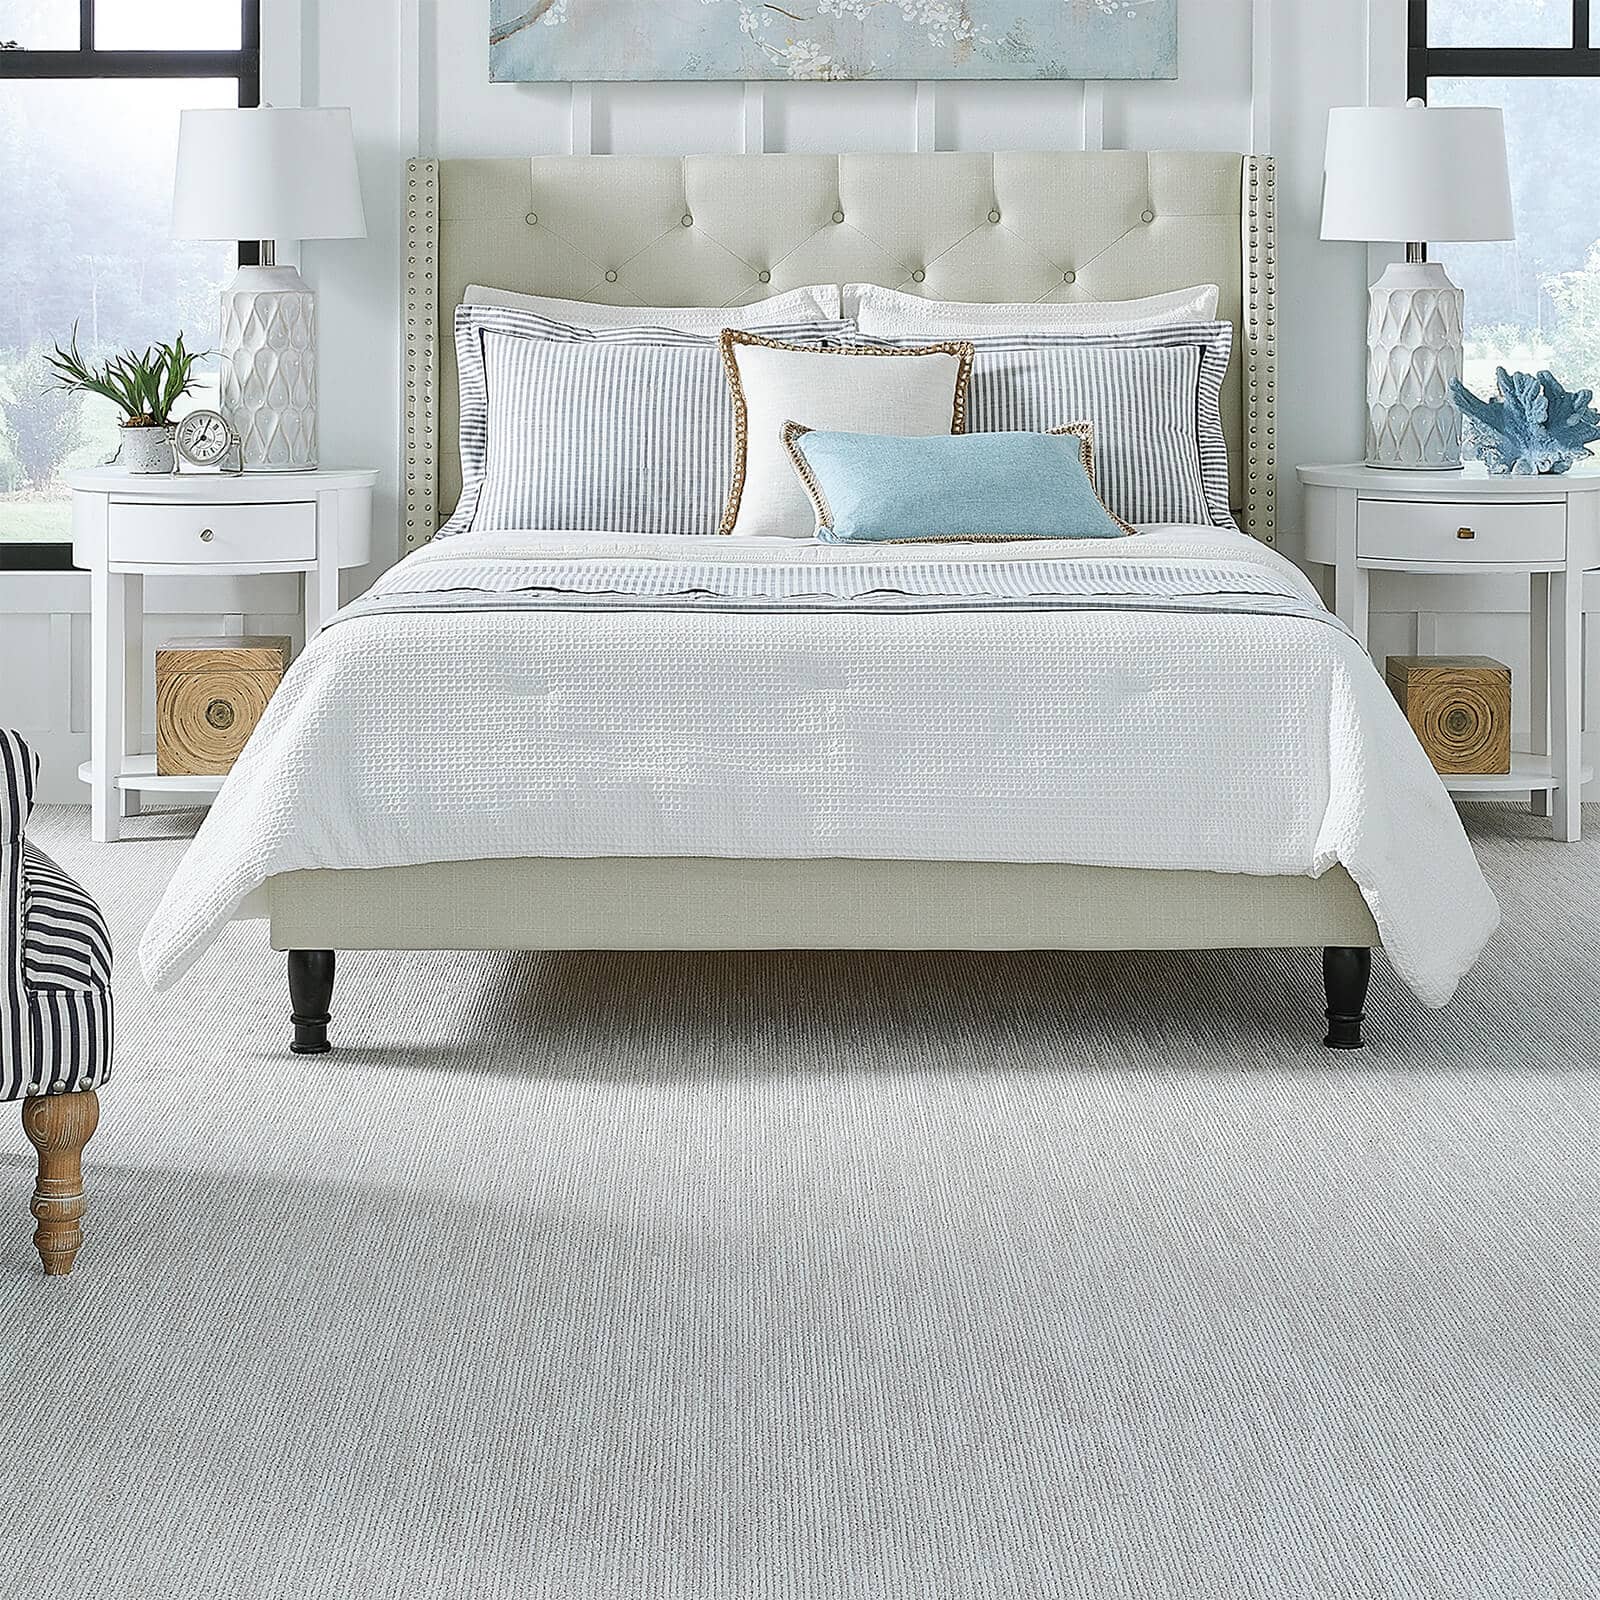 Premium carpet flooring in bedroom | Jimmie Lyles Flooring Gallery